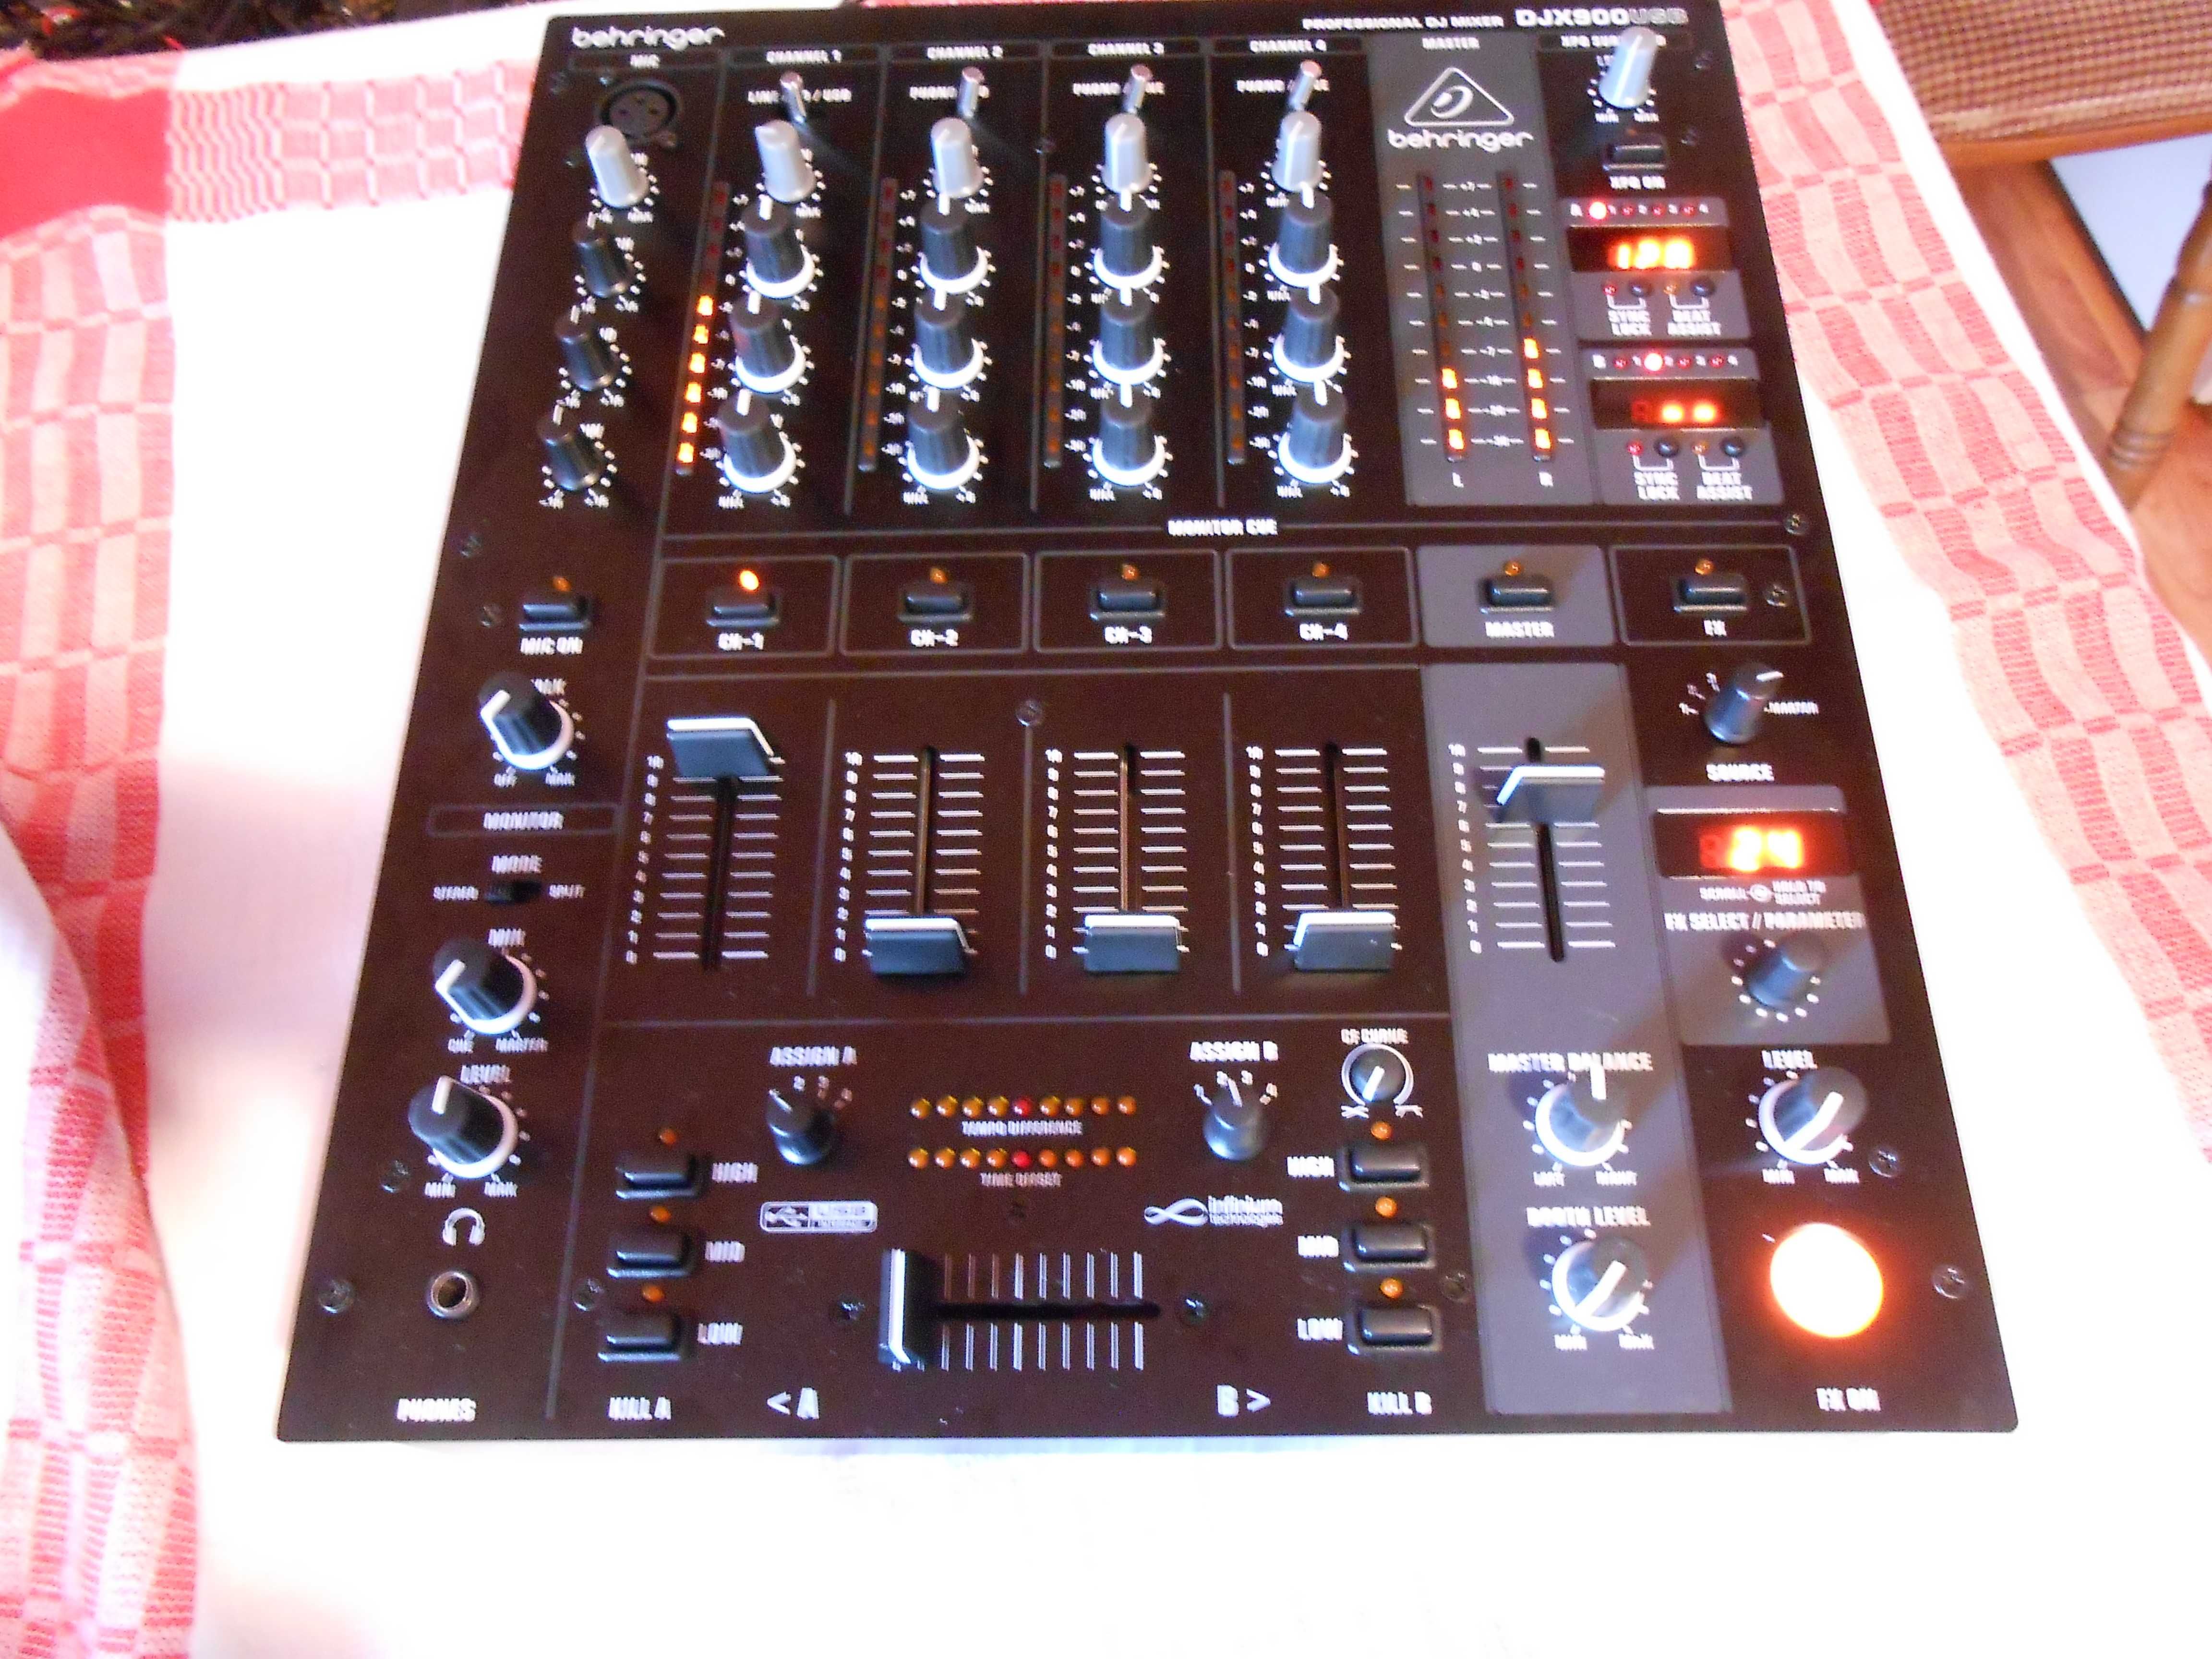 Vand mixer Behringer DJX900 USB ca Reloop,Omnitronic,Phonic,Cdj,Djm